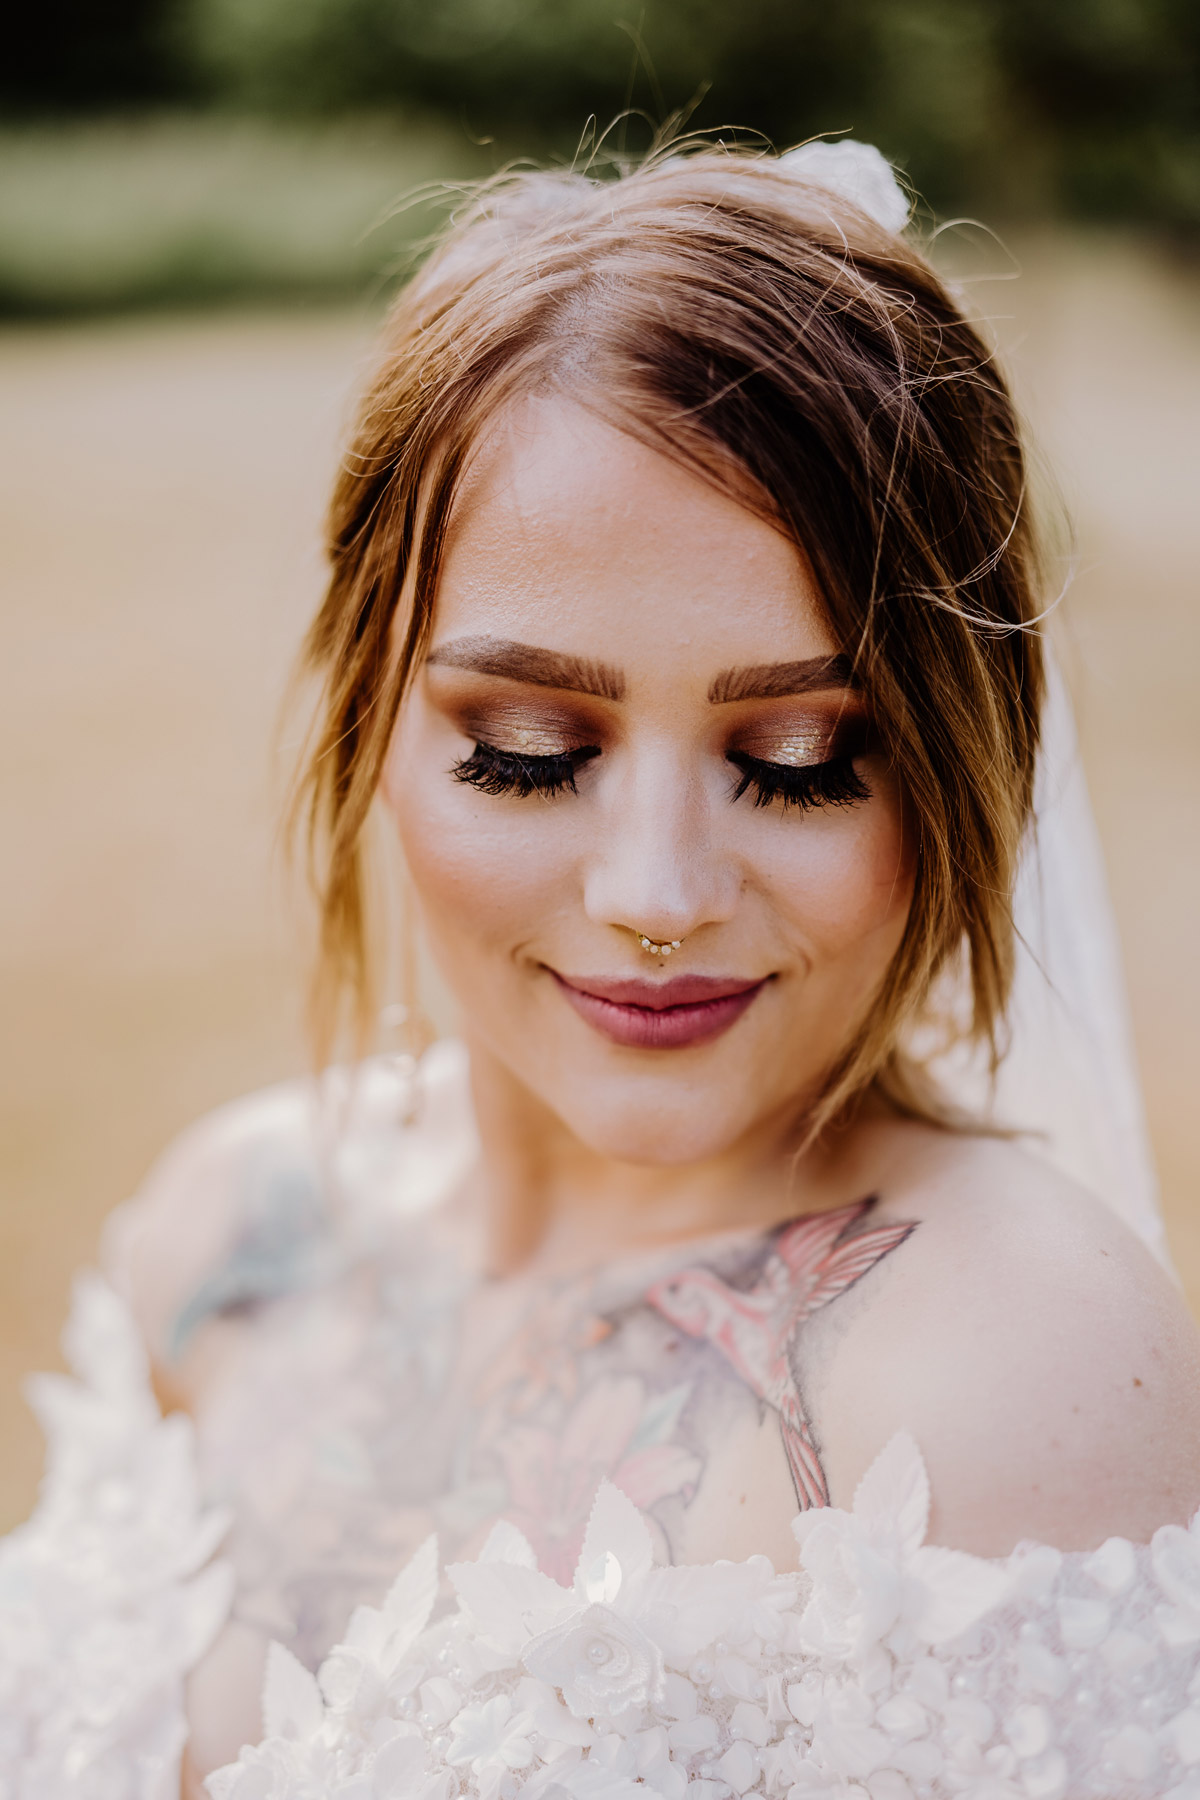 Braut mit Glitzer Make-Up und Tattoos: Celestial Galaxy Bride - als Berliner Hochzeitsfotografen sehen wir an echten Bräuten die verschiedensten Trends. Finde mehr Hochzeitsfotografien bei © www.hochzeitslicht.de #hochzeitslicht